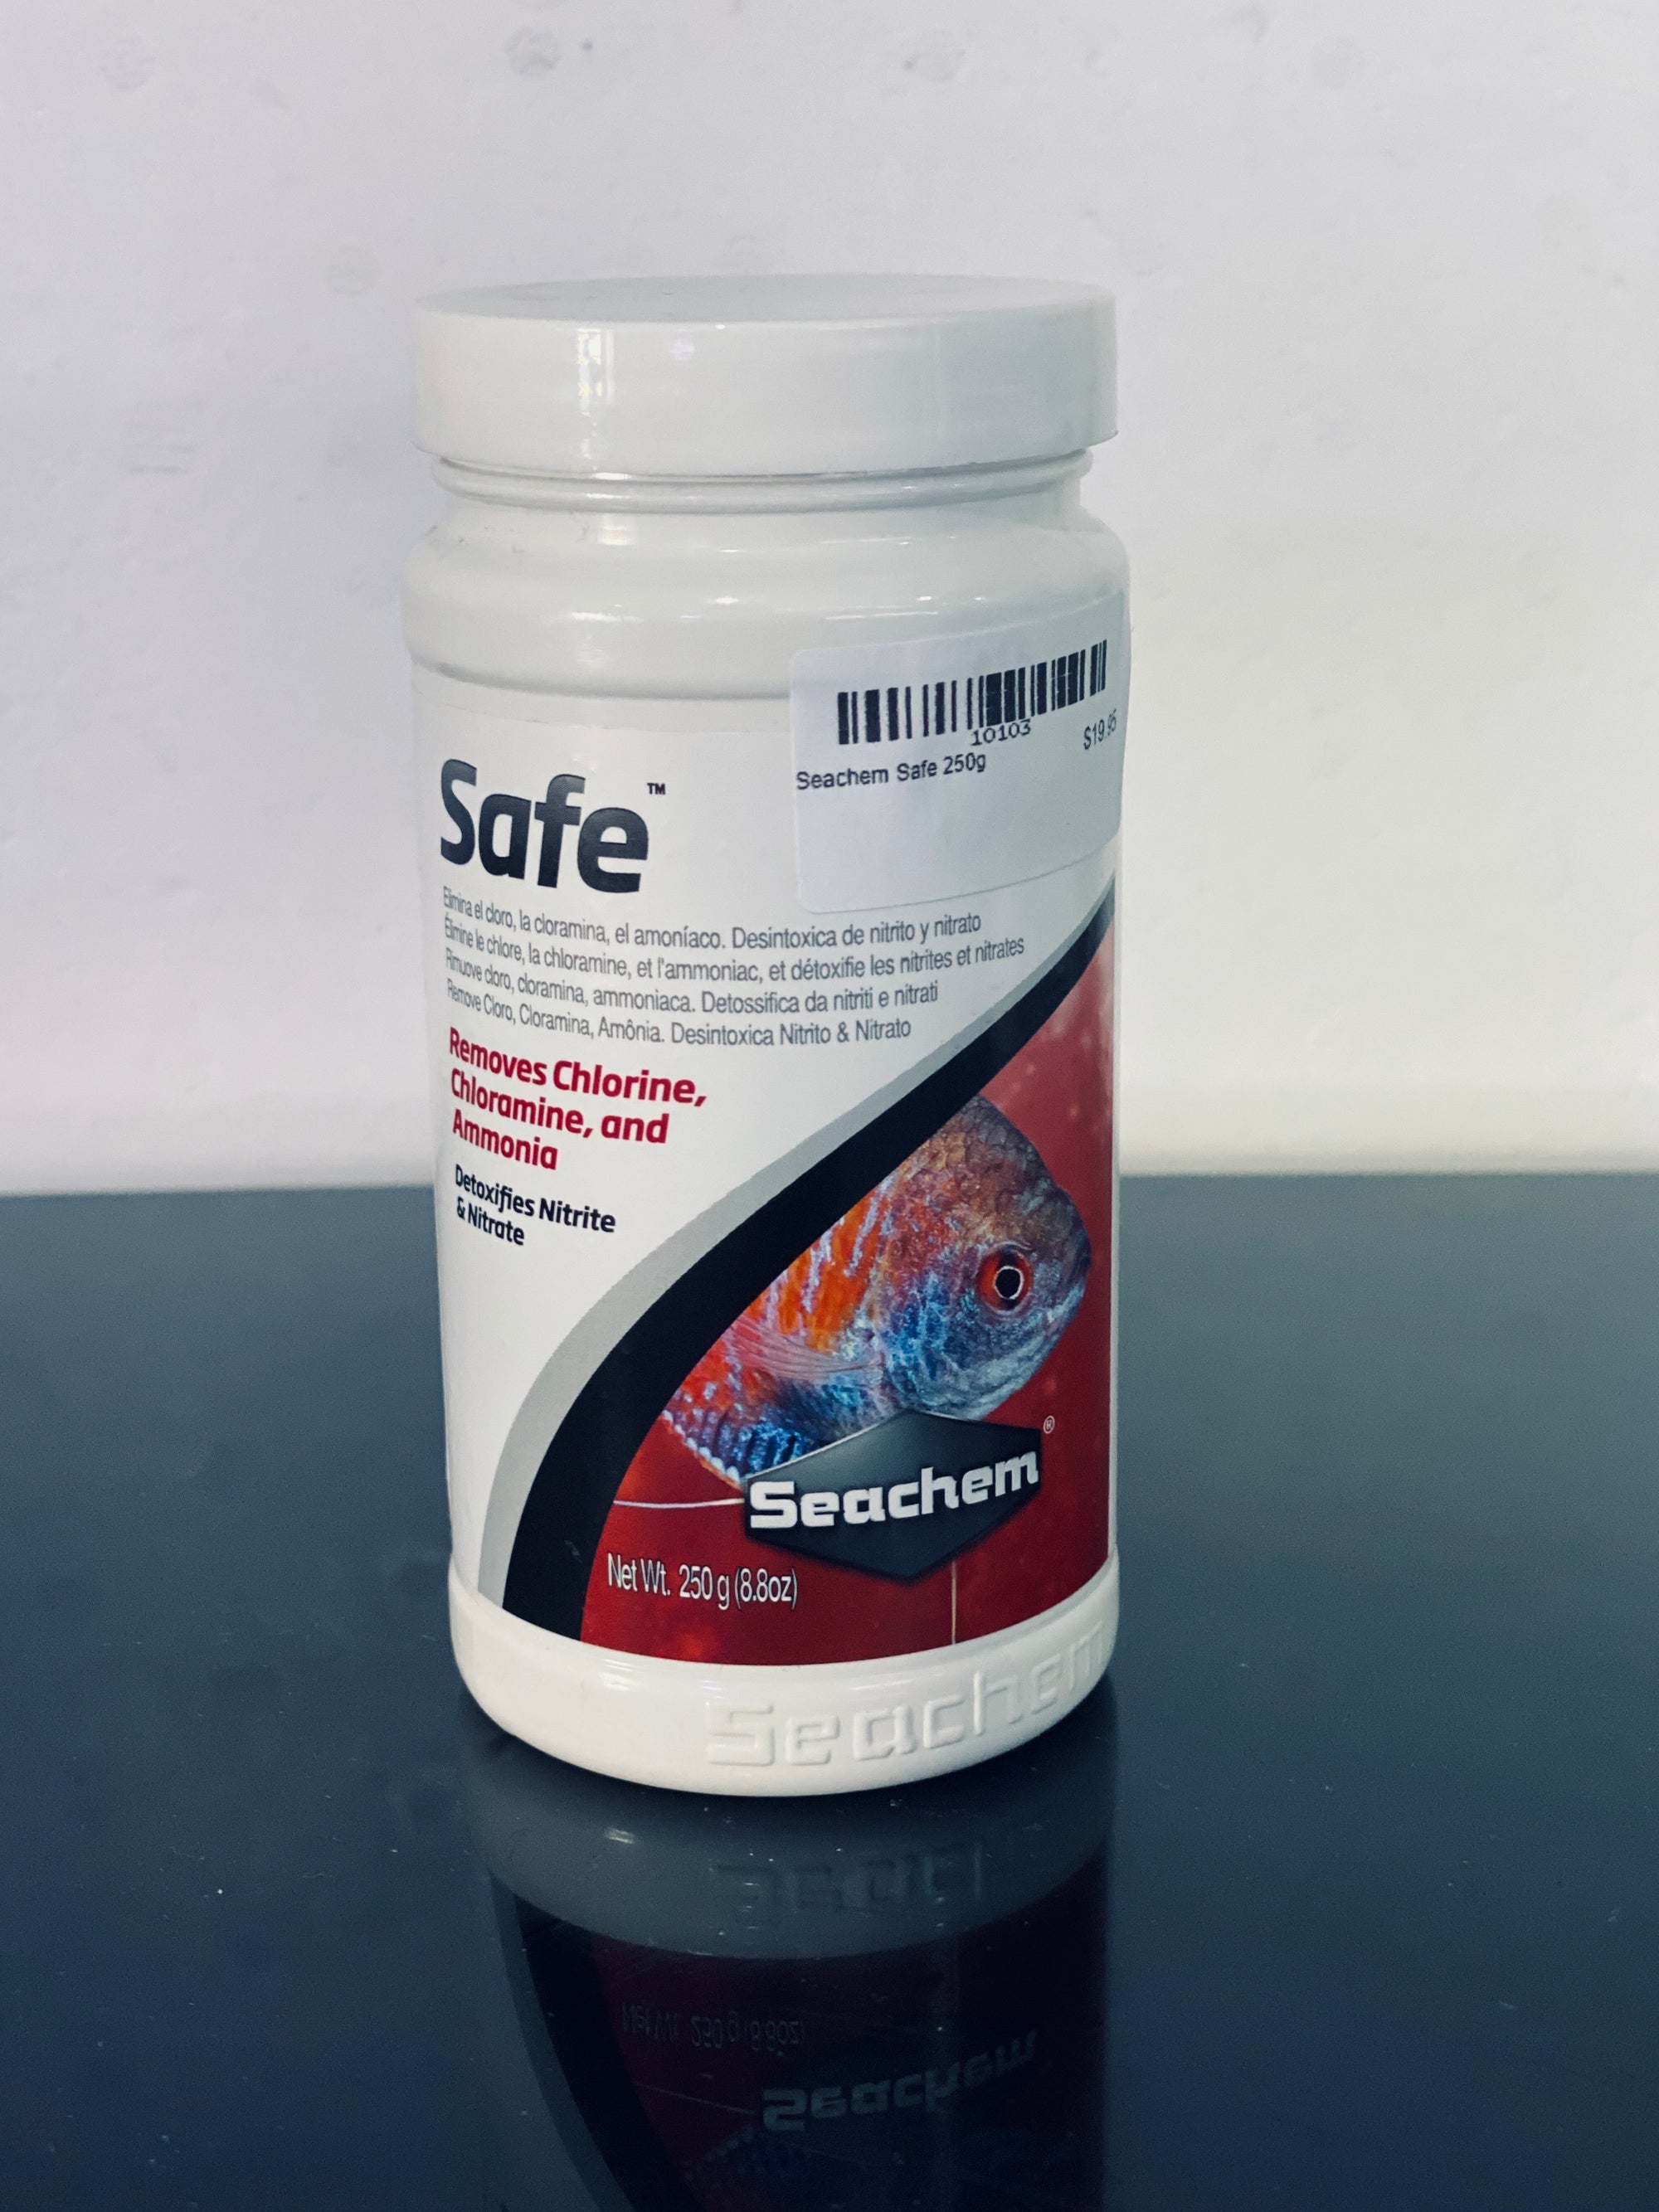 Seachem Safe 250g